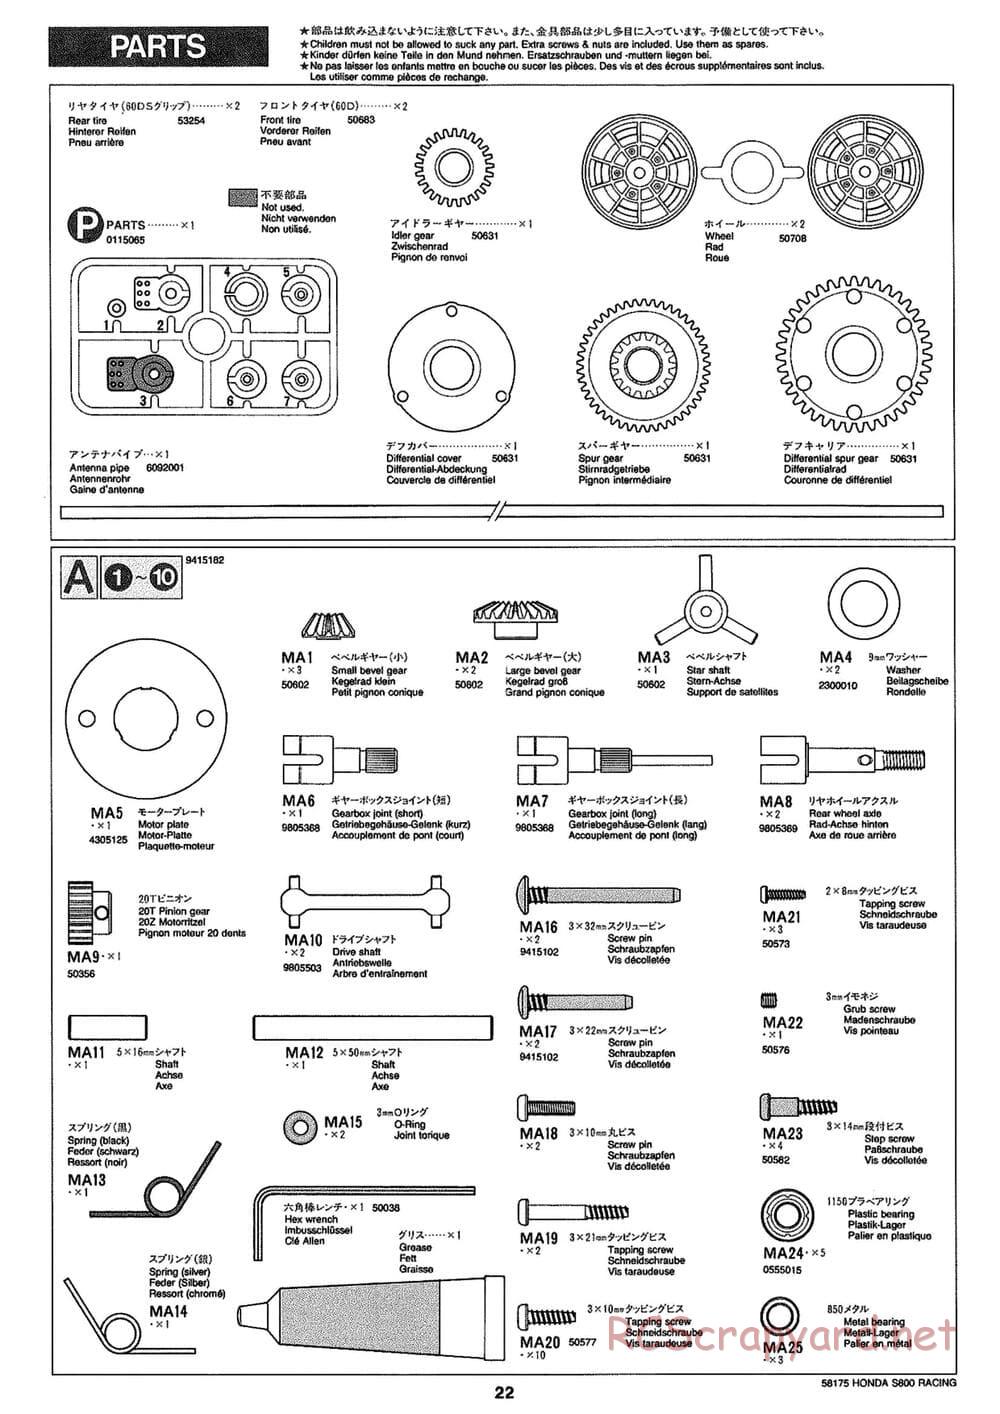 Tamiya - Honda S800 Racing - M02 Chassis - Manual - Page 22